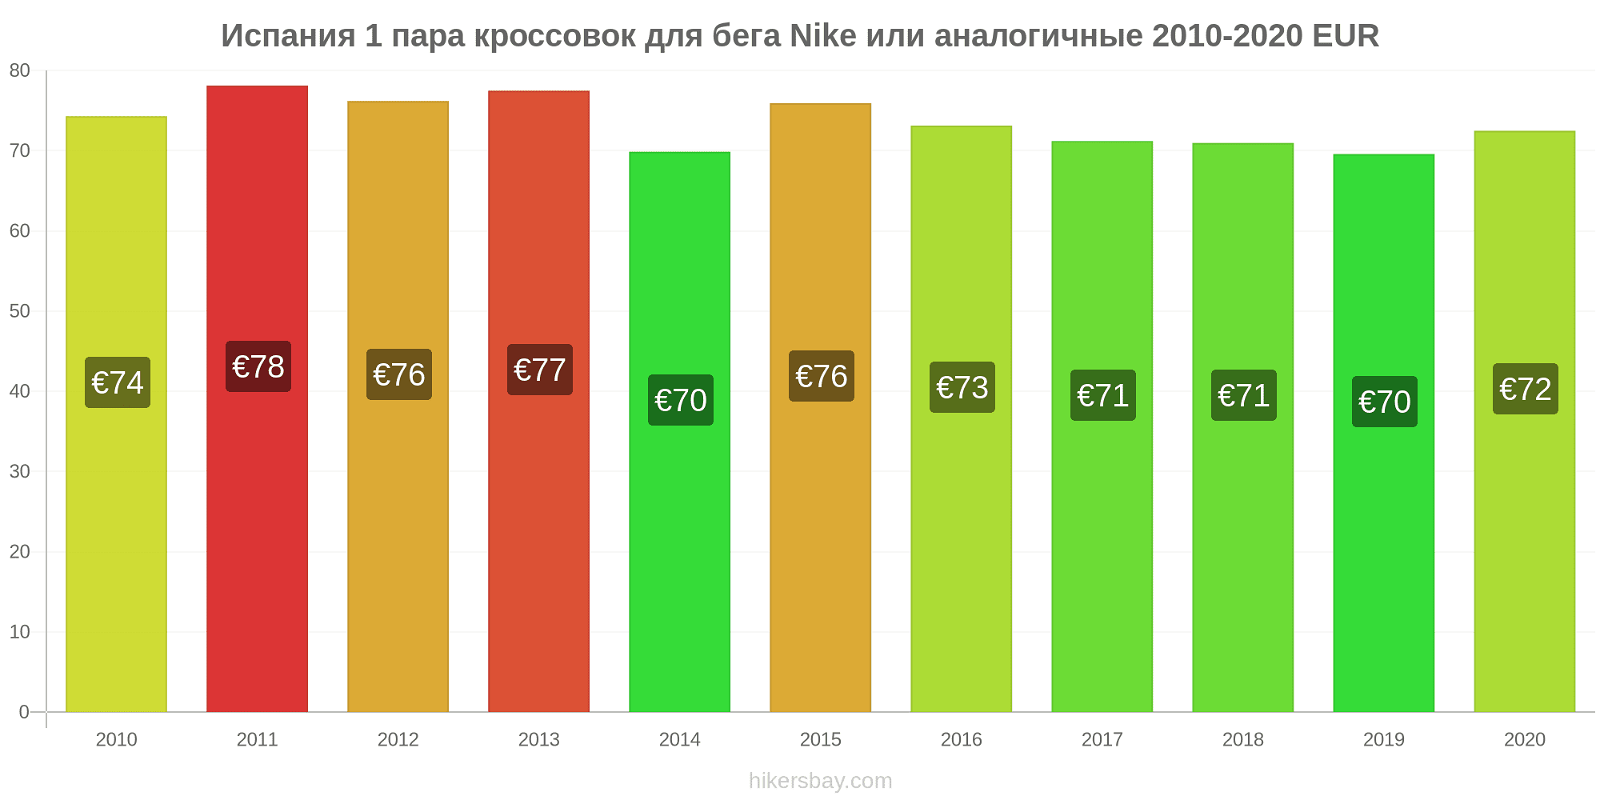 Испания изменения цен 1 пара кроссовок для бега Nike или аналогичные hikersbay.com